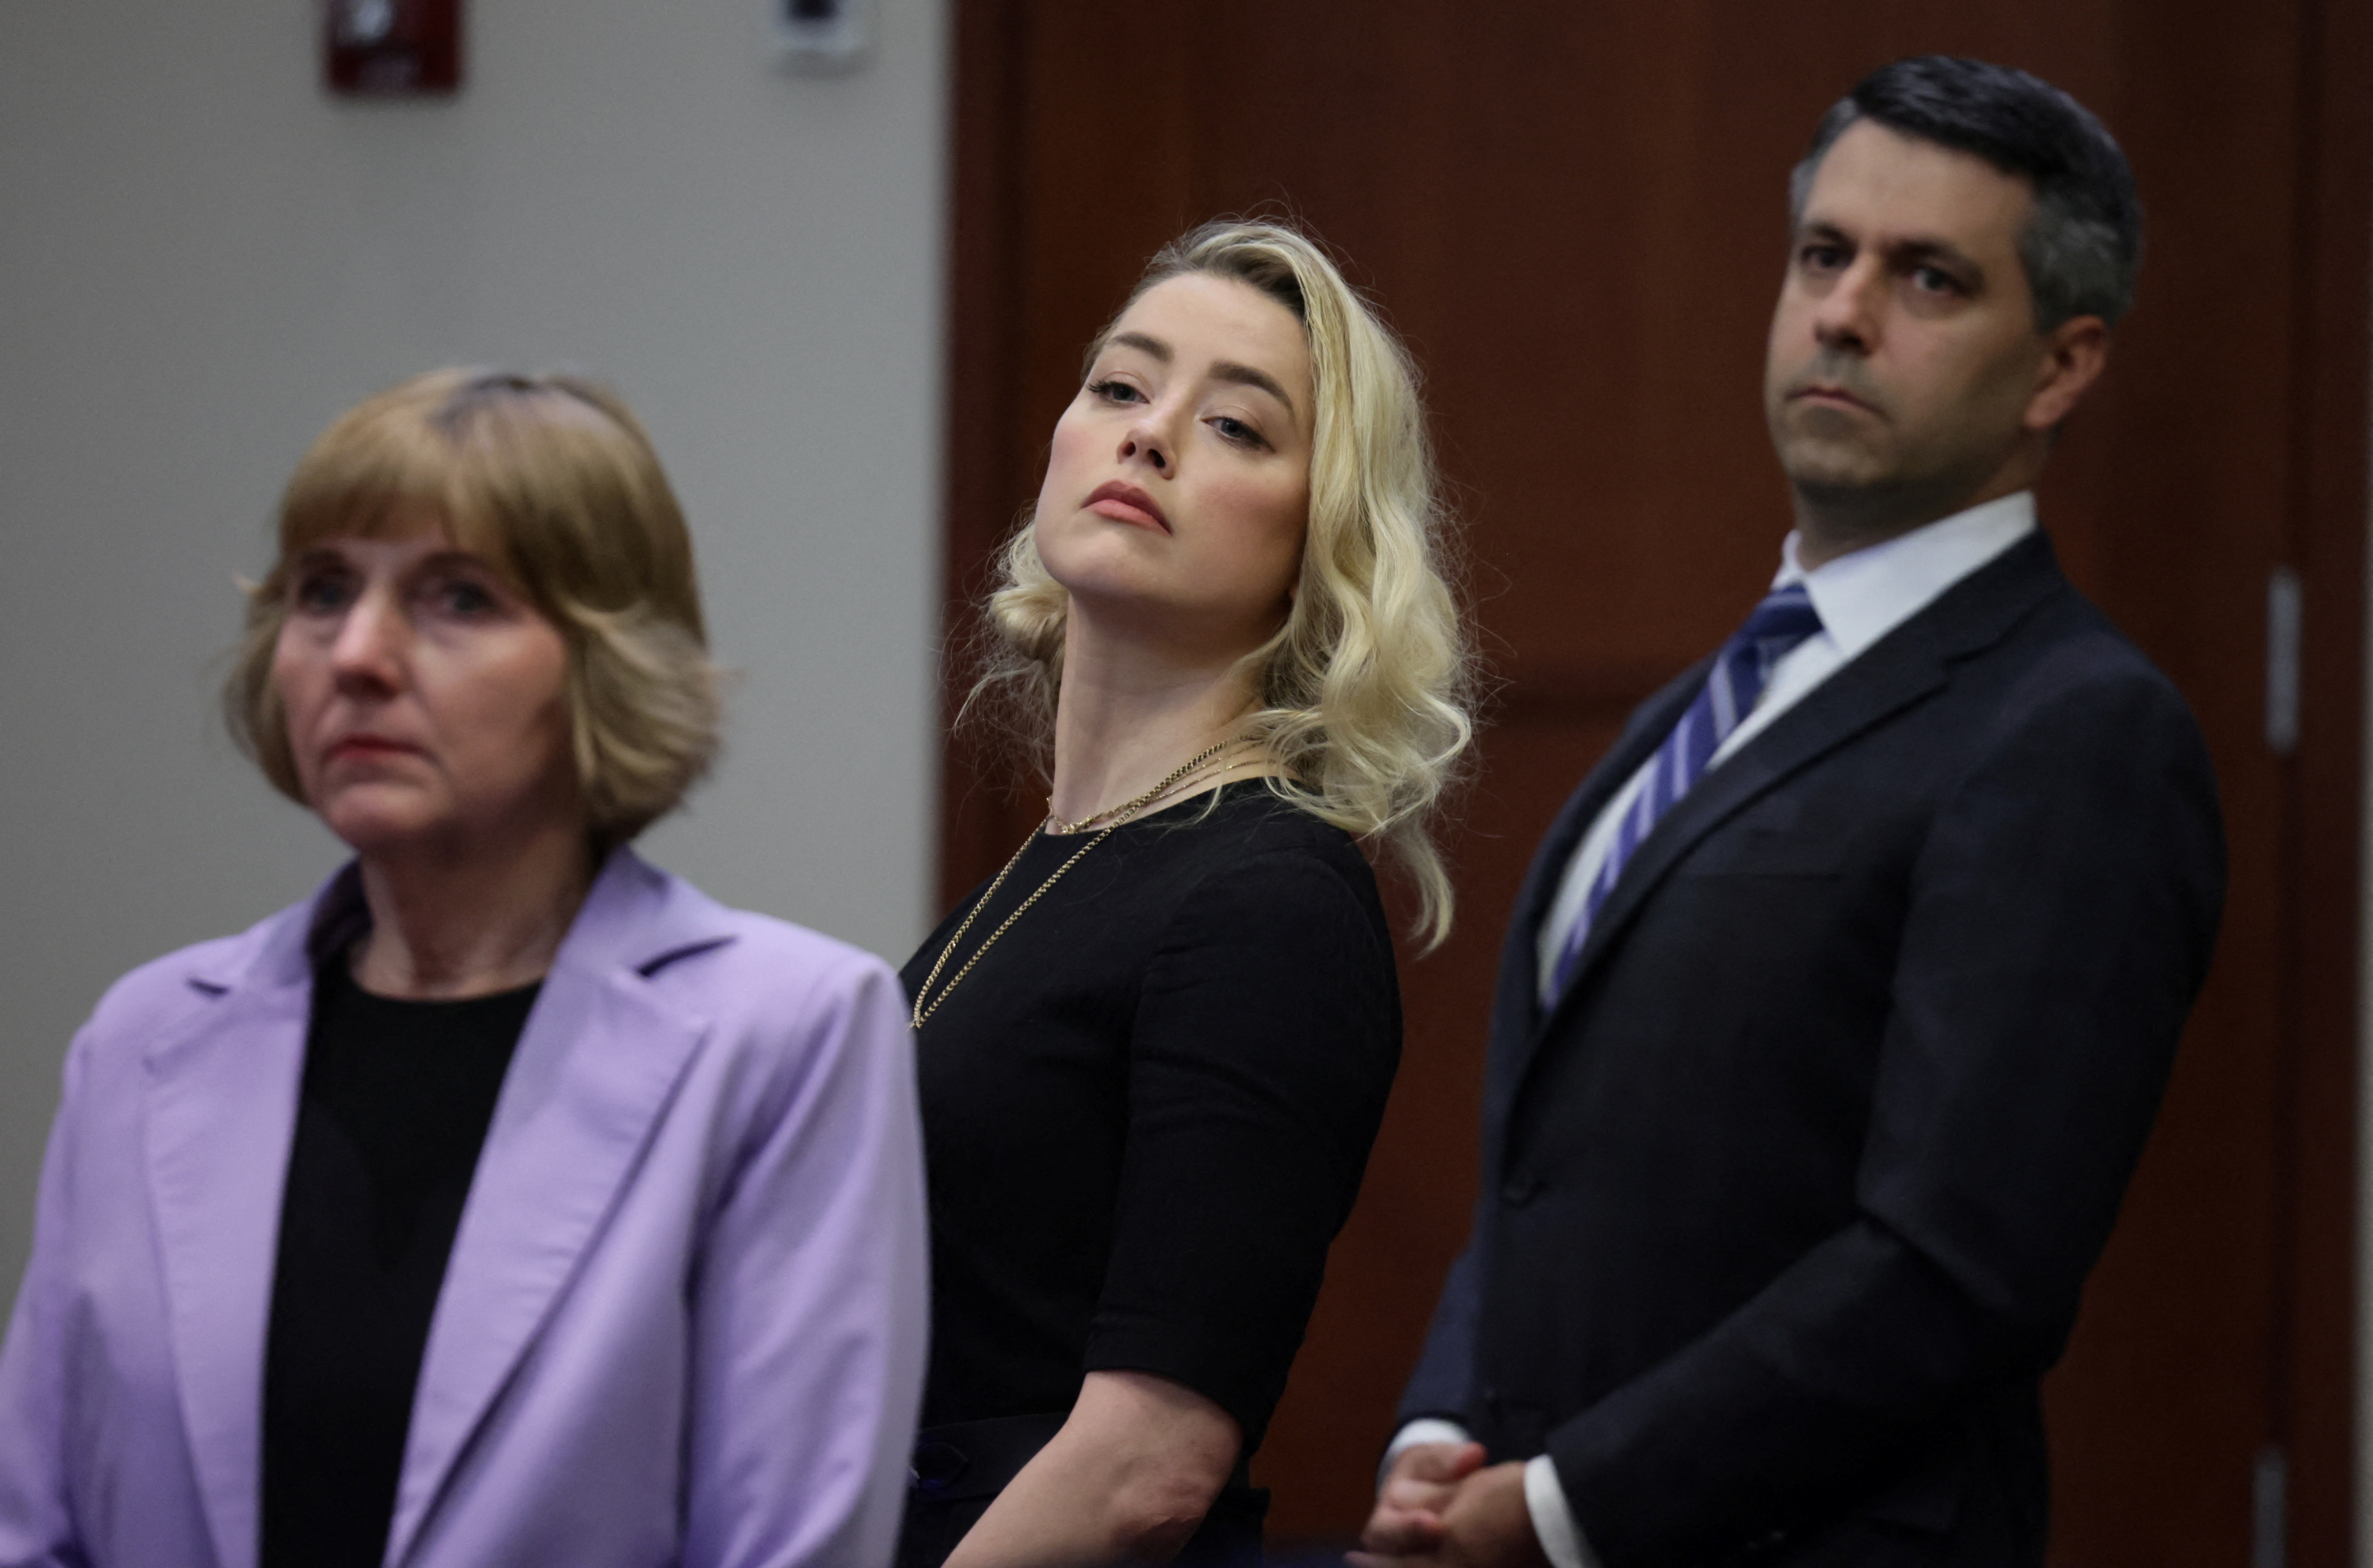 La actriz Amber Heard y sus abogados Elaine Bredehoft y Benjamin Rottenborn miran hacia el jurado, justo antes de que el jurado anuncie que cree que ella difamó a su ex marido Johnny Depp el 1 de junio de 2022 (REUTERS/Evelyn Hockstein)